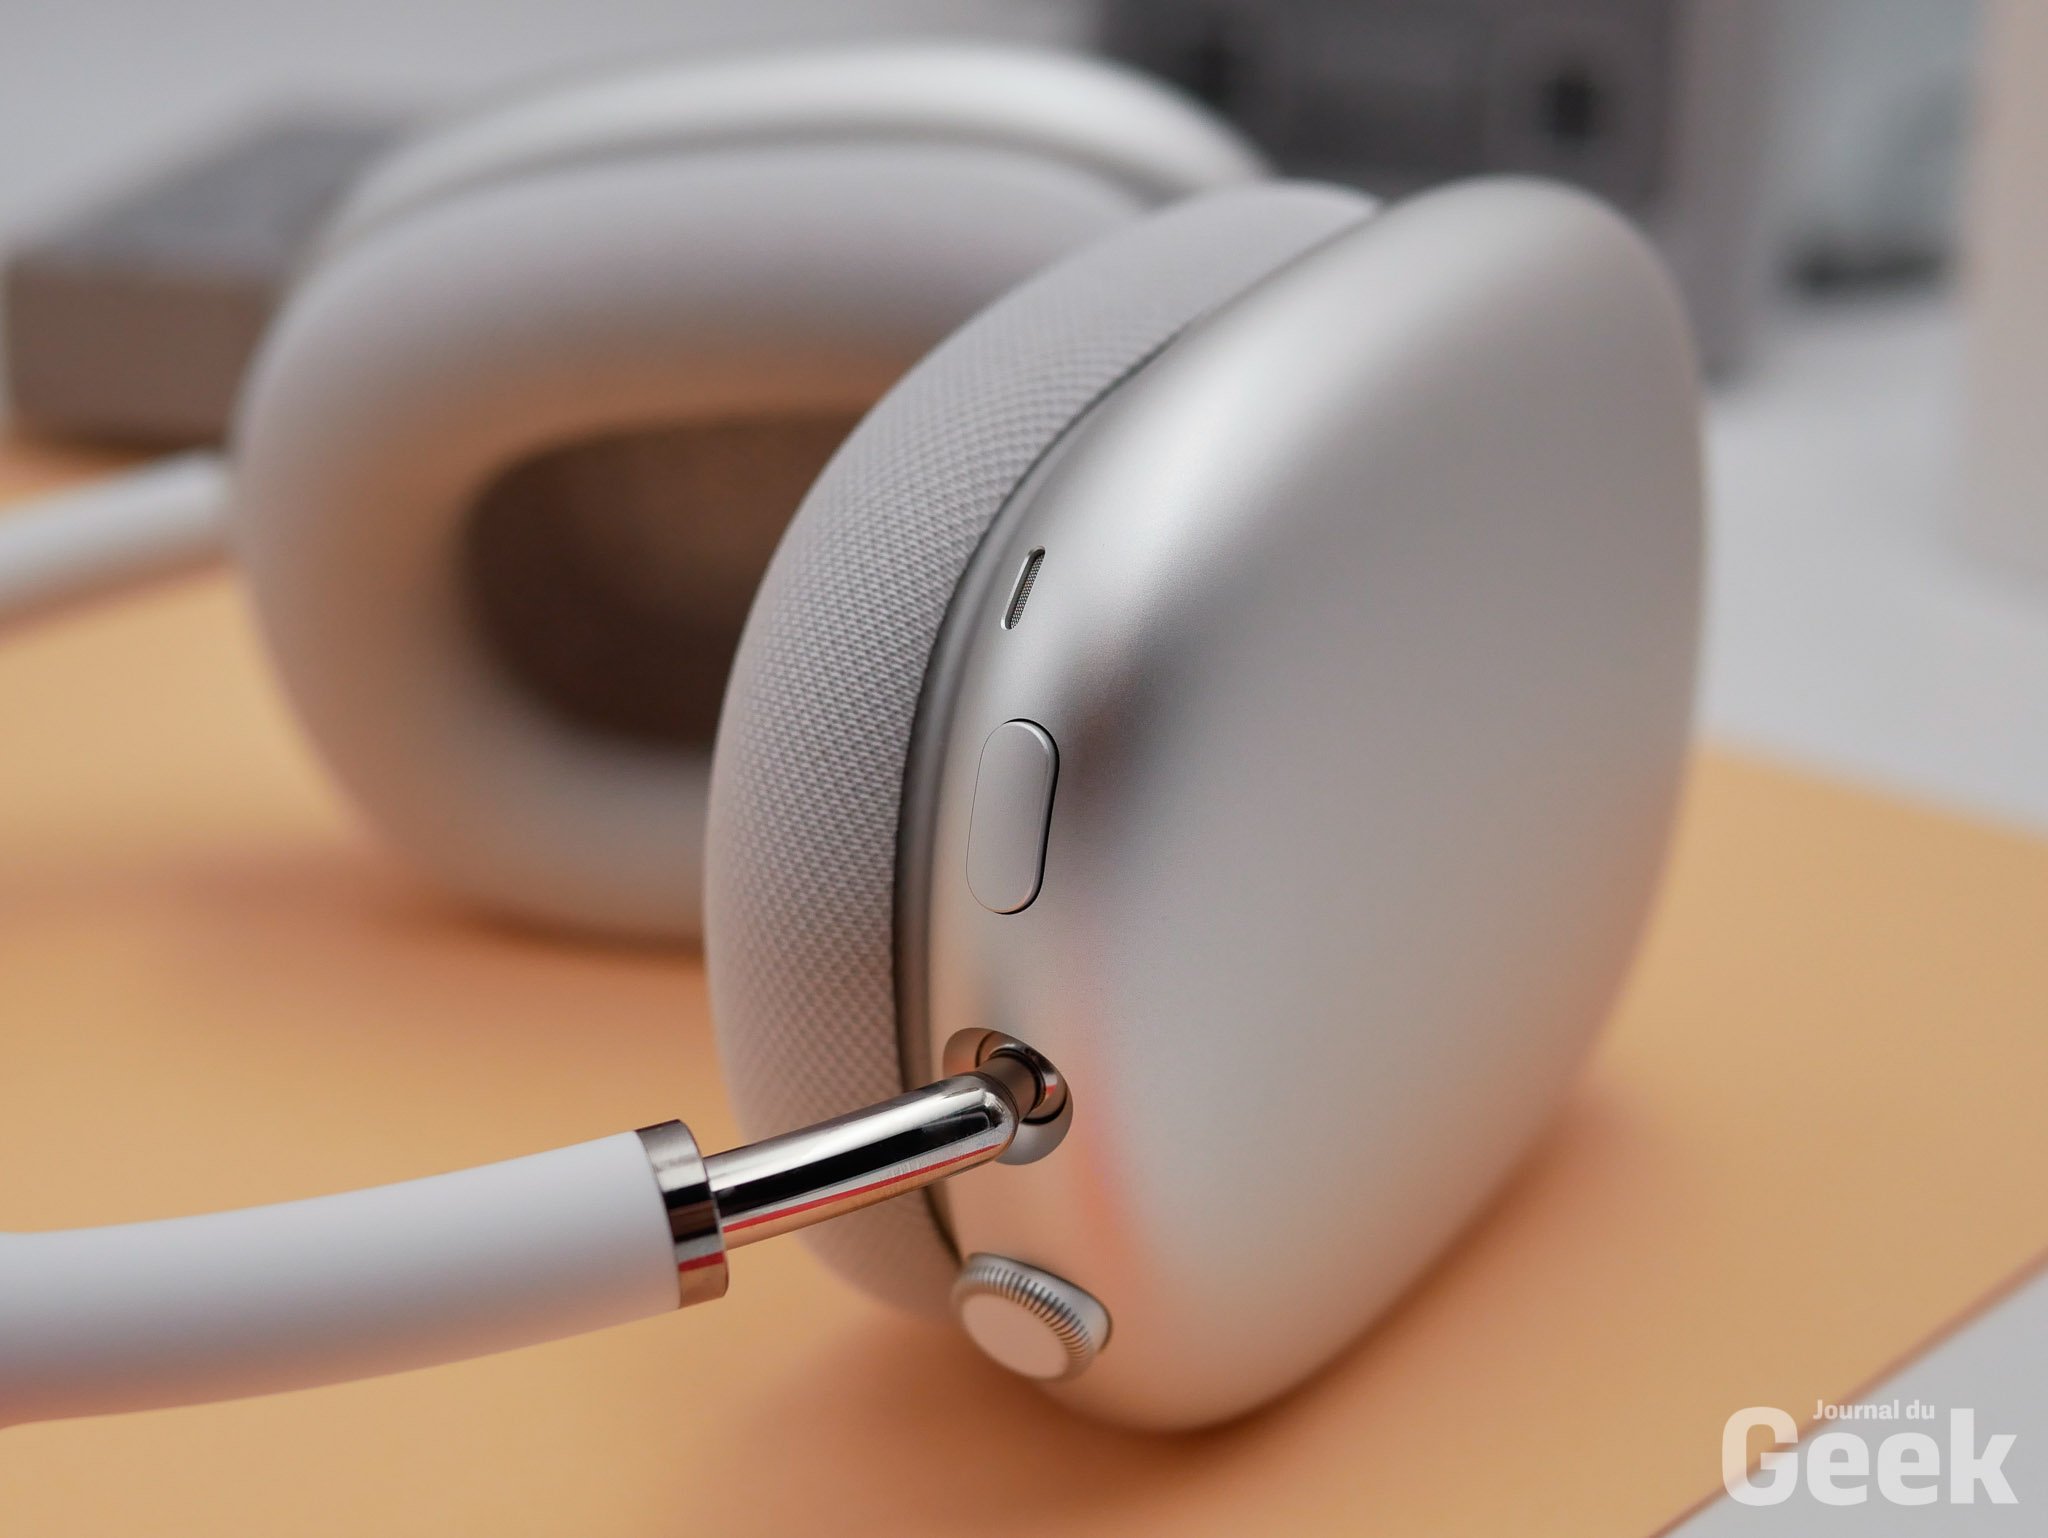 AirPods Max : Apple présente son tout premier casque audio sans